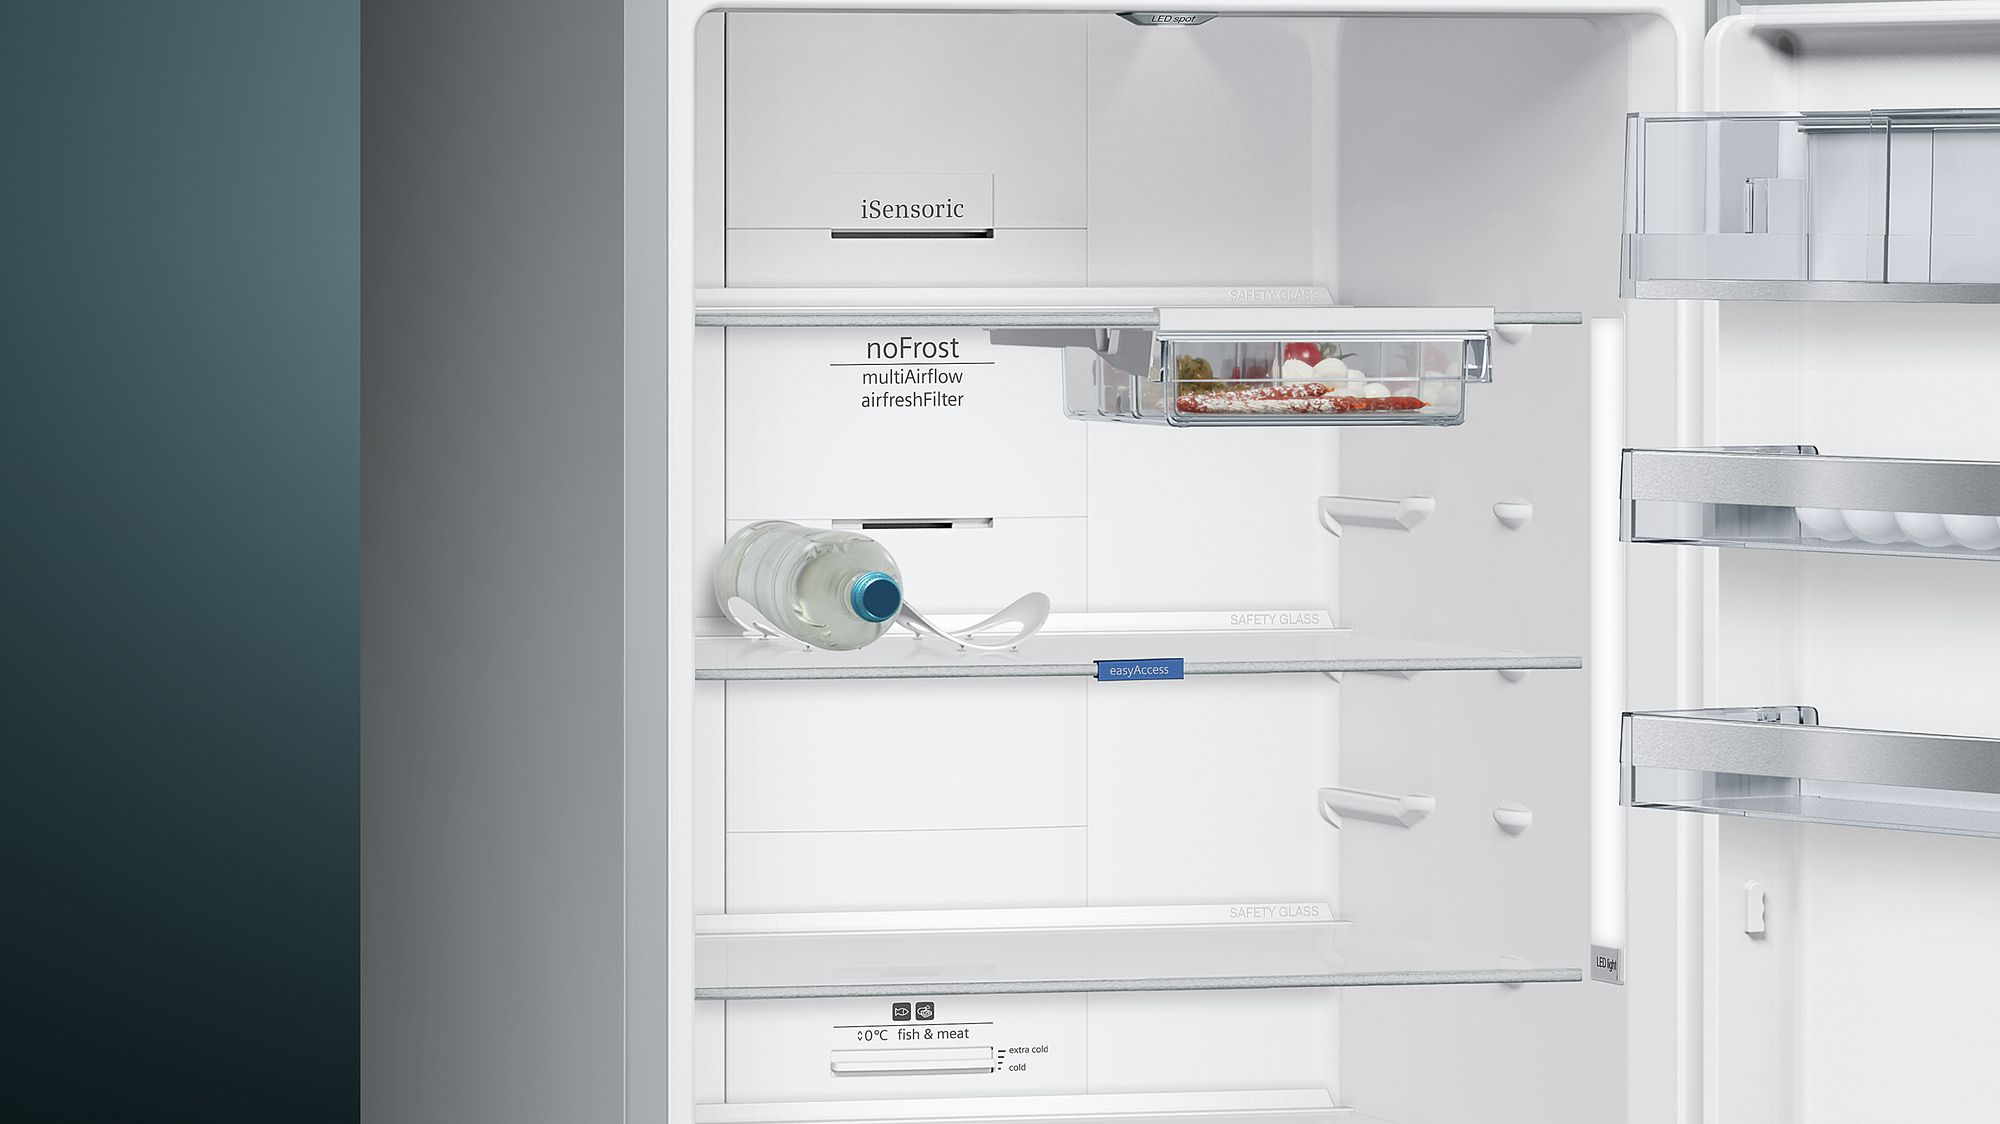 iQ500 Alttan Donduruculu Buzdolabı 70 cm, Kolay temizlenebilir Inox